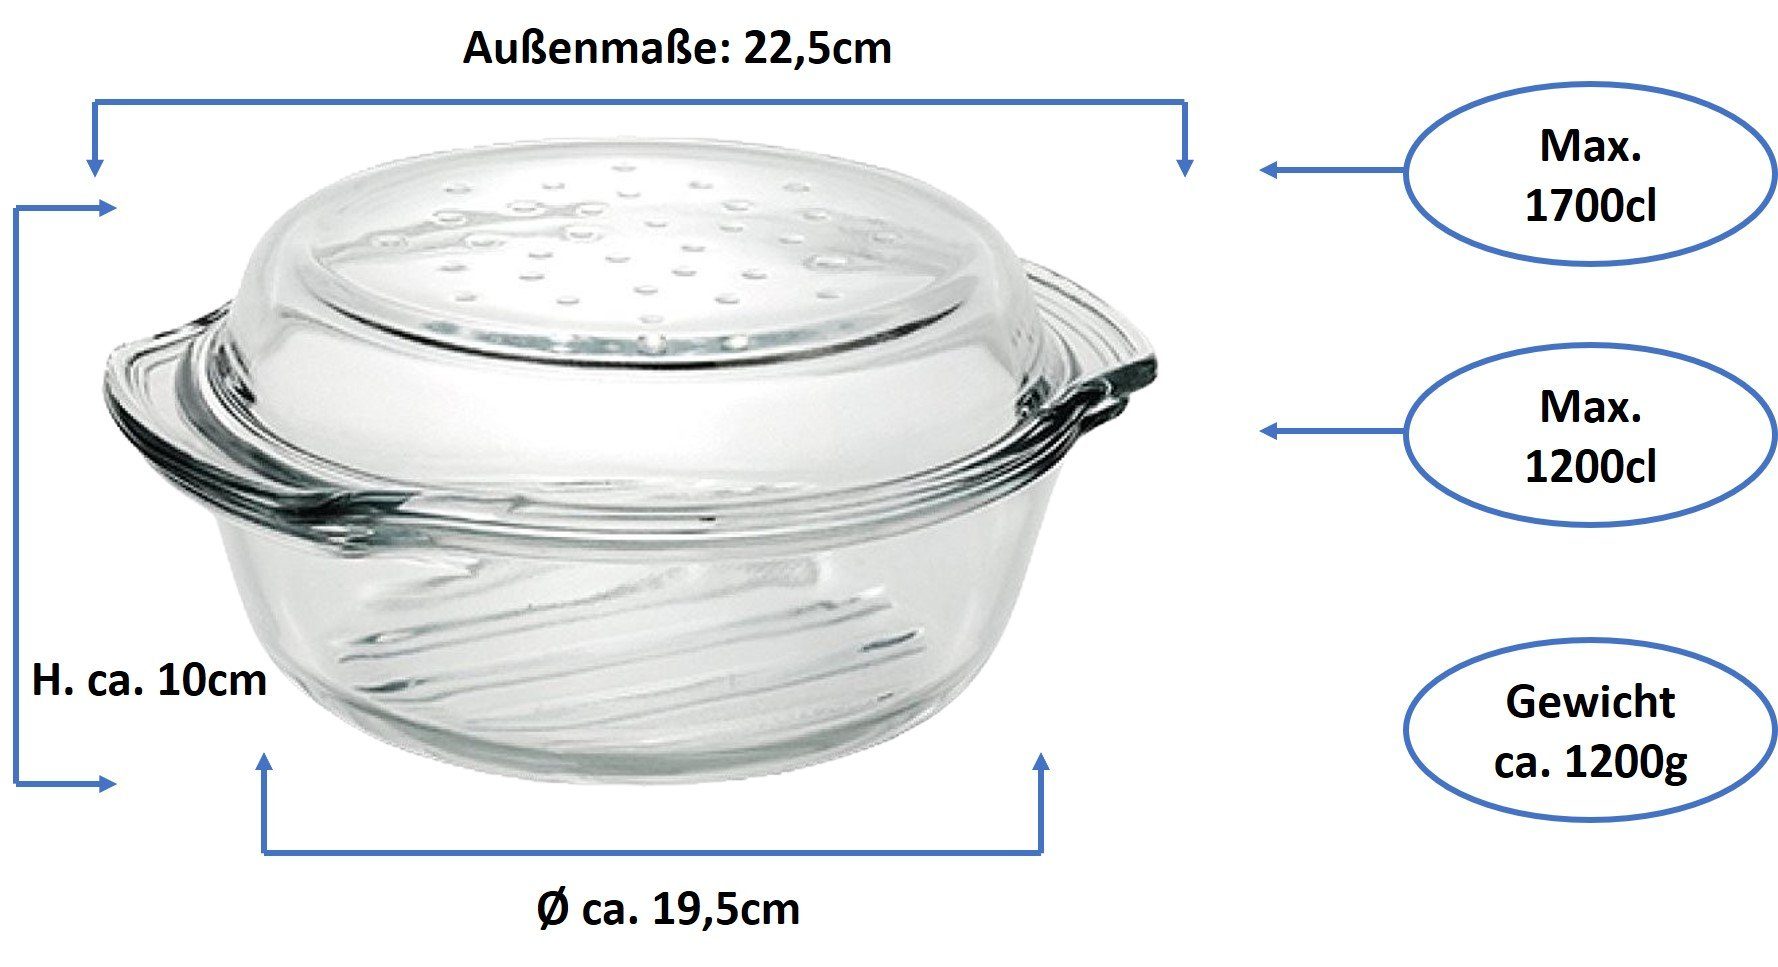 1,7L Emilja & Drop Grill Glas Deckel Auflaufform Auflaufform mit